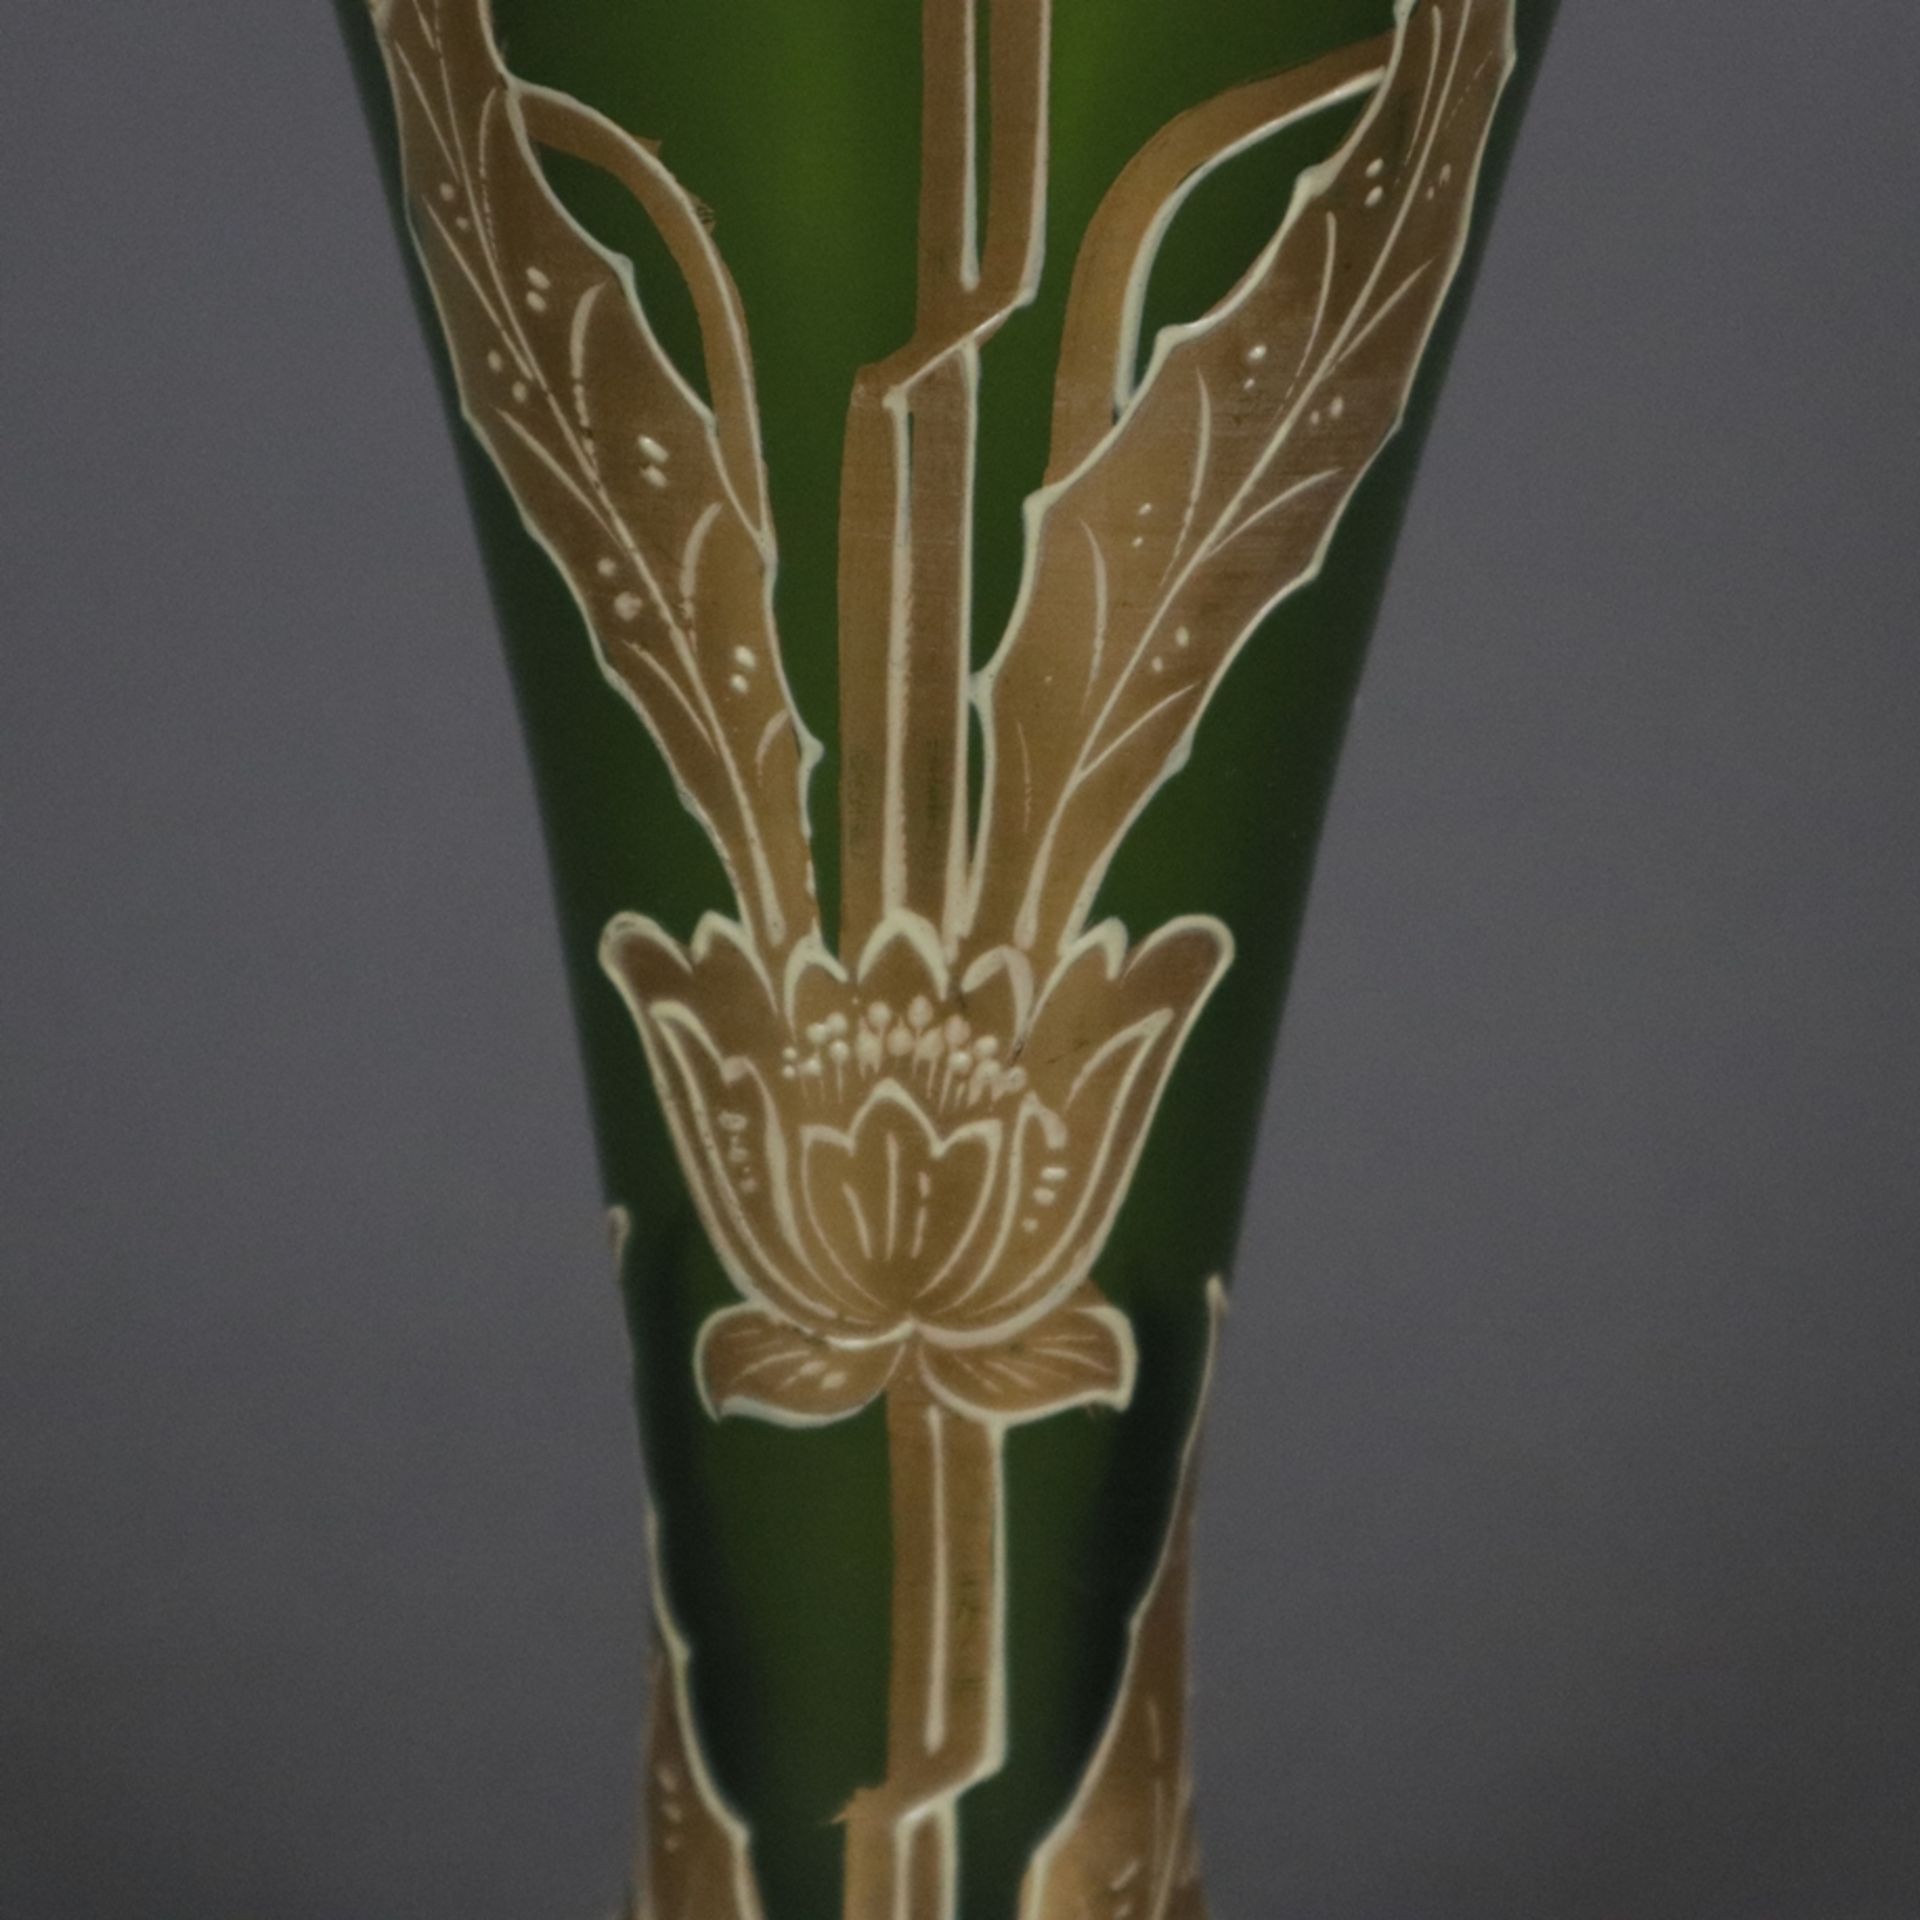 Jugendstil-Glasvase mit Metallmontur - wohl Frankreich um 1900, Klarglas mit grünem Unterfang, scha - Bild 5 aus 8